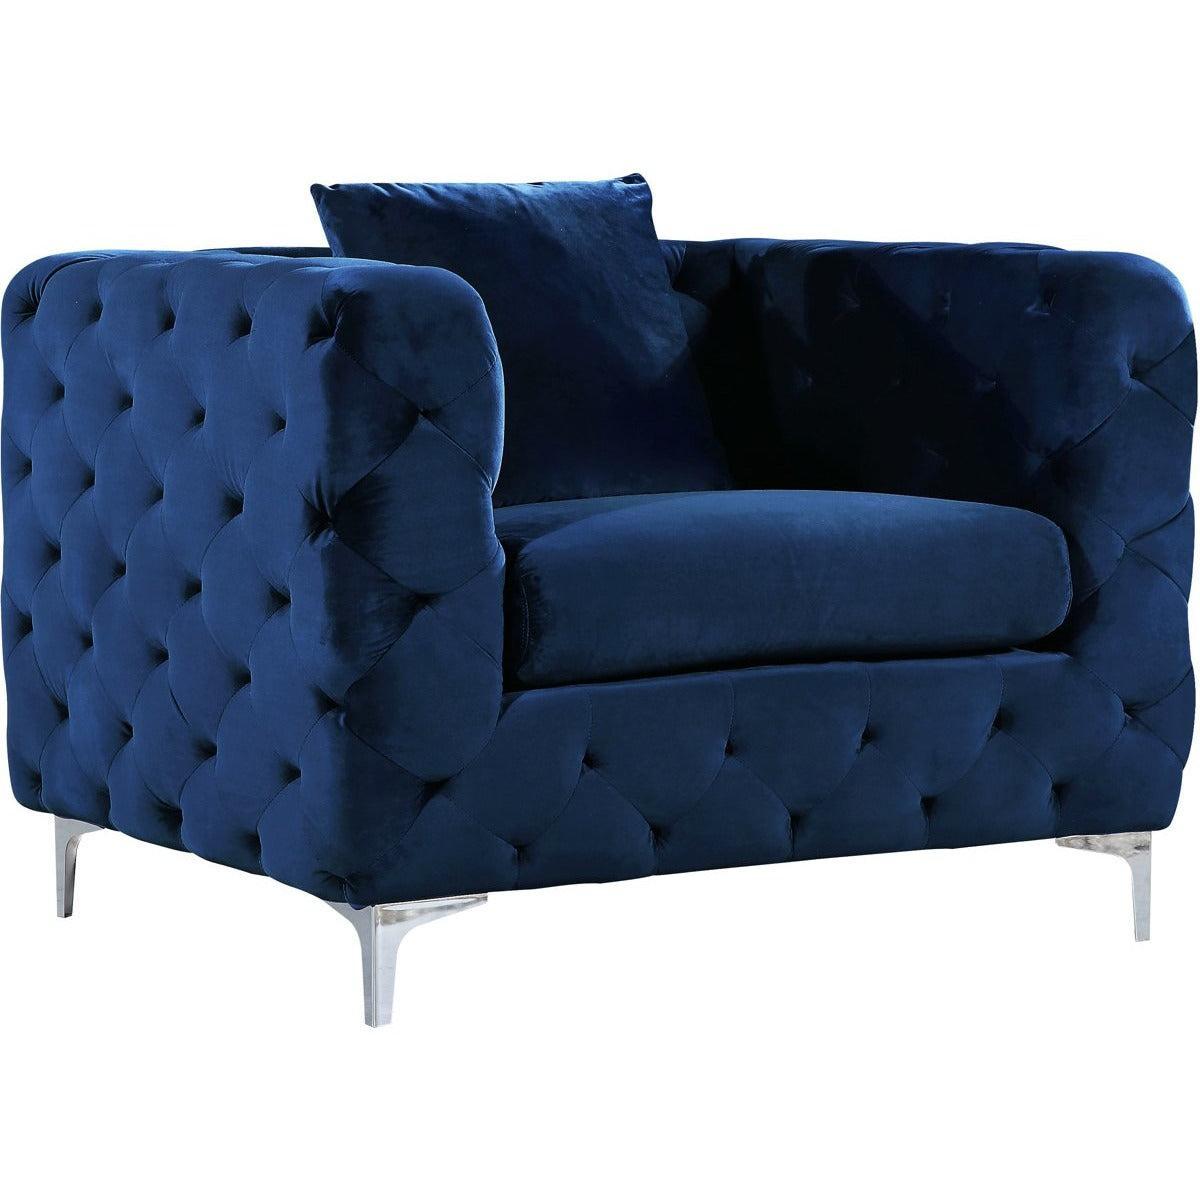 Meridian Furniture Scarlett Navy Velvet ChairMeridian Furniture - Chair - Minimal And Modern - 1